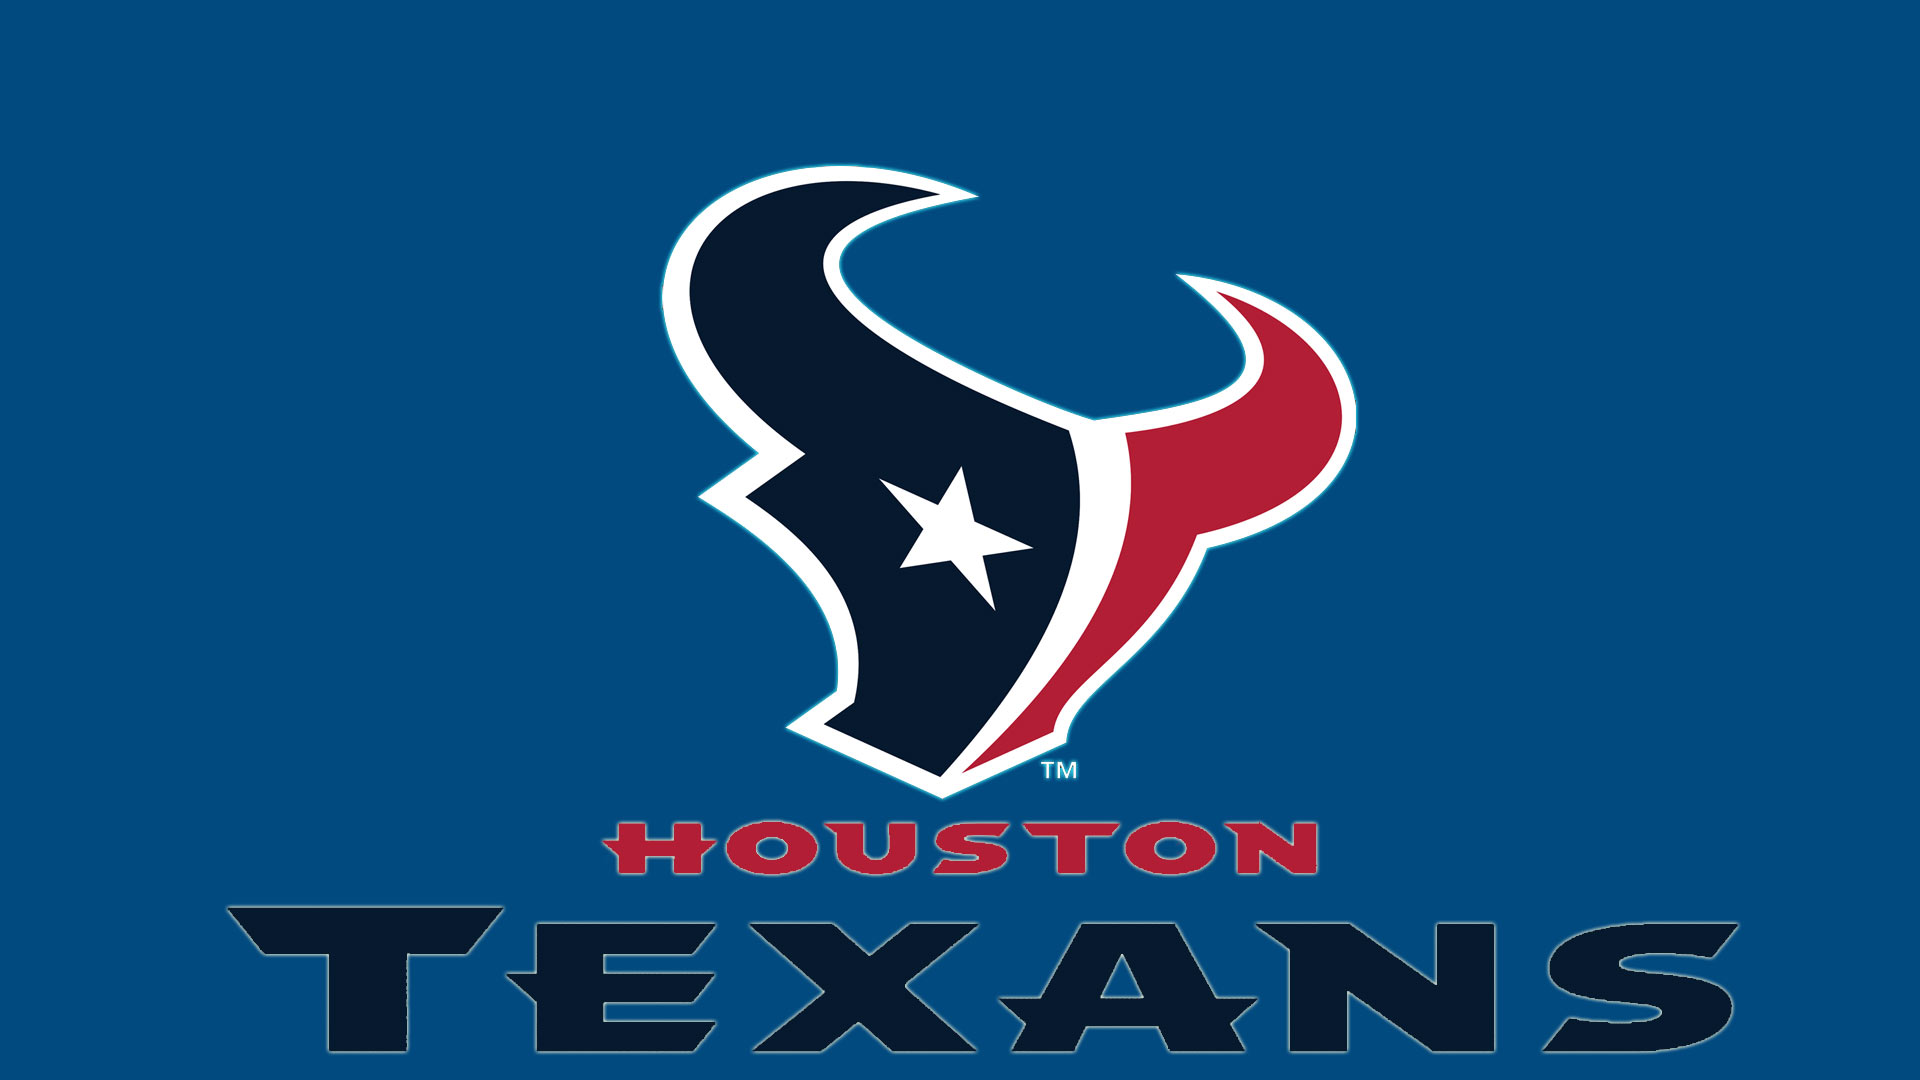 Houston Texans logo Hd 1080p Wallpaper screen size 1920X1080